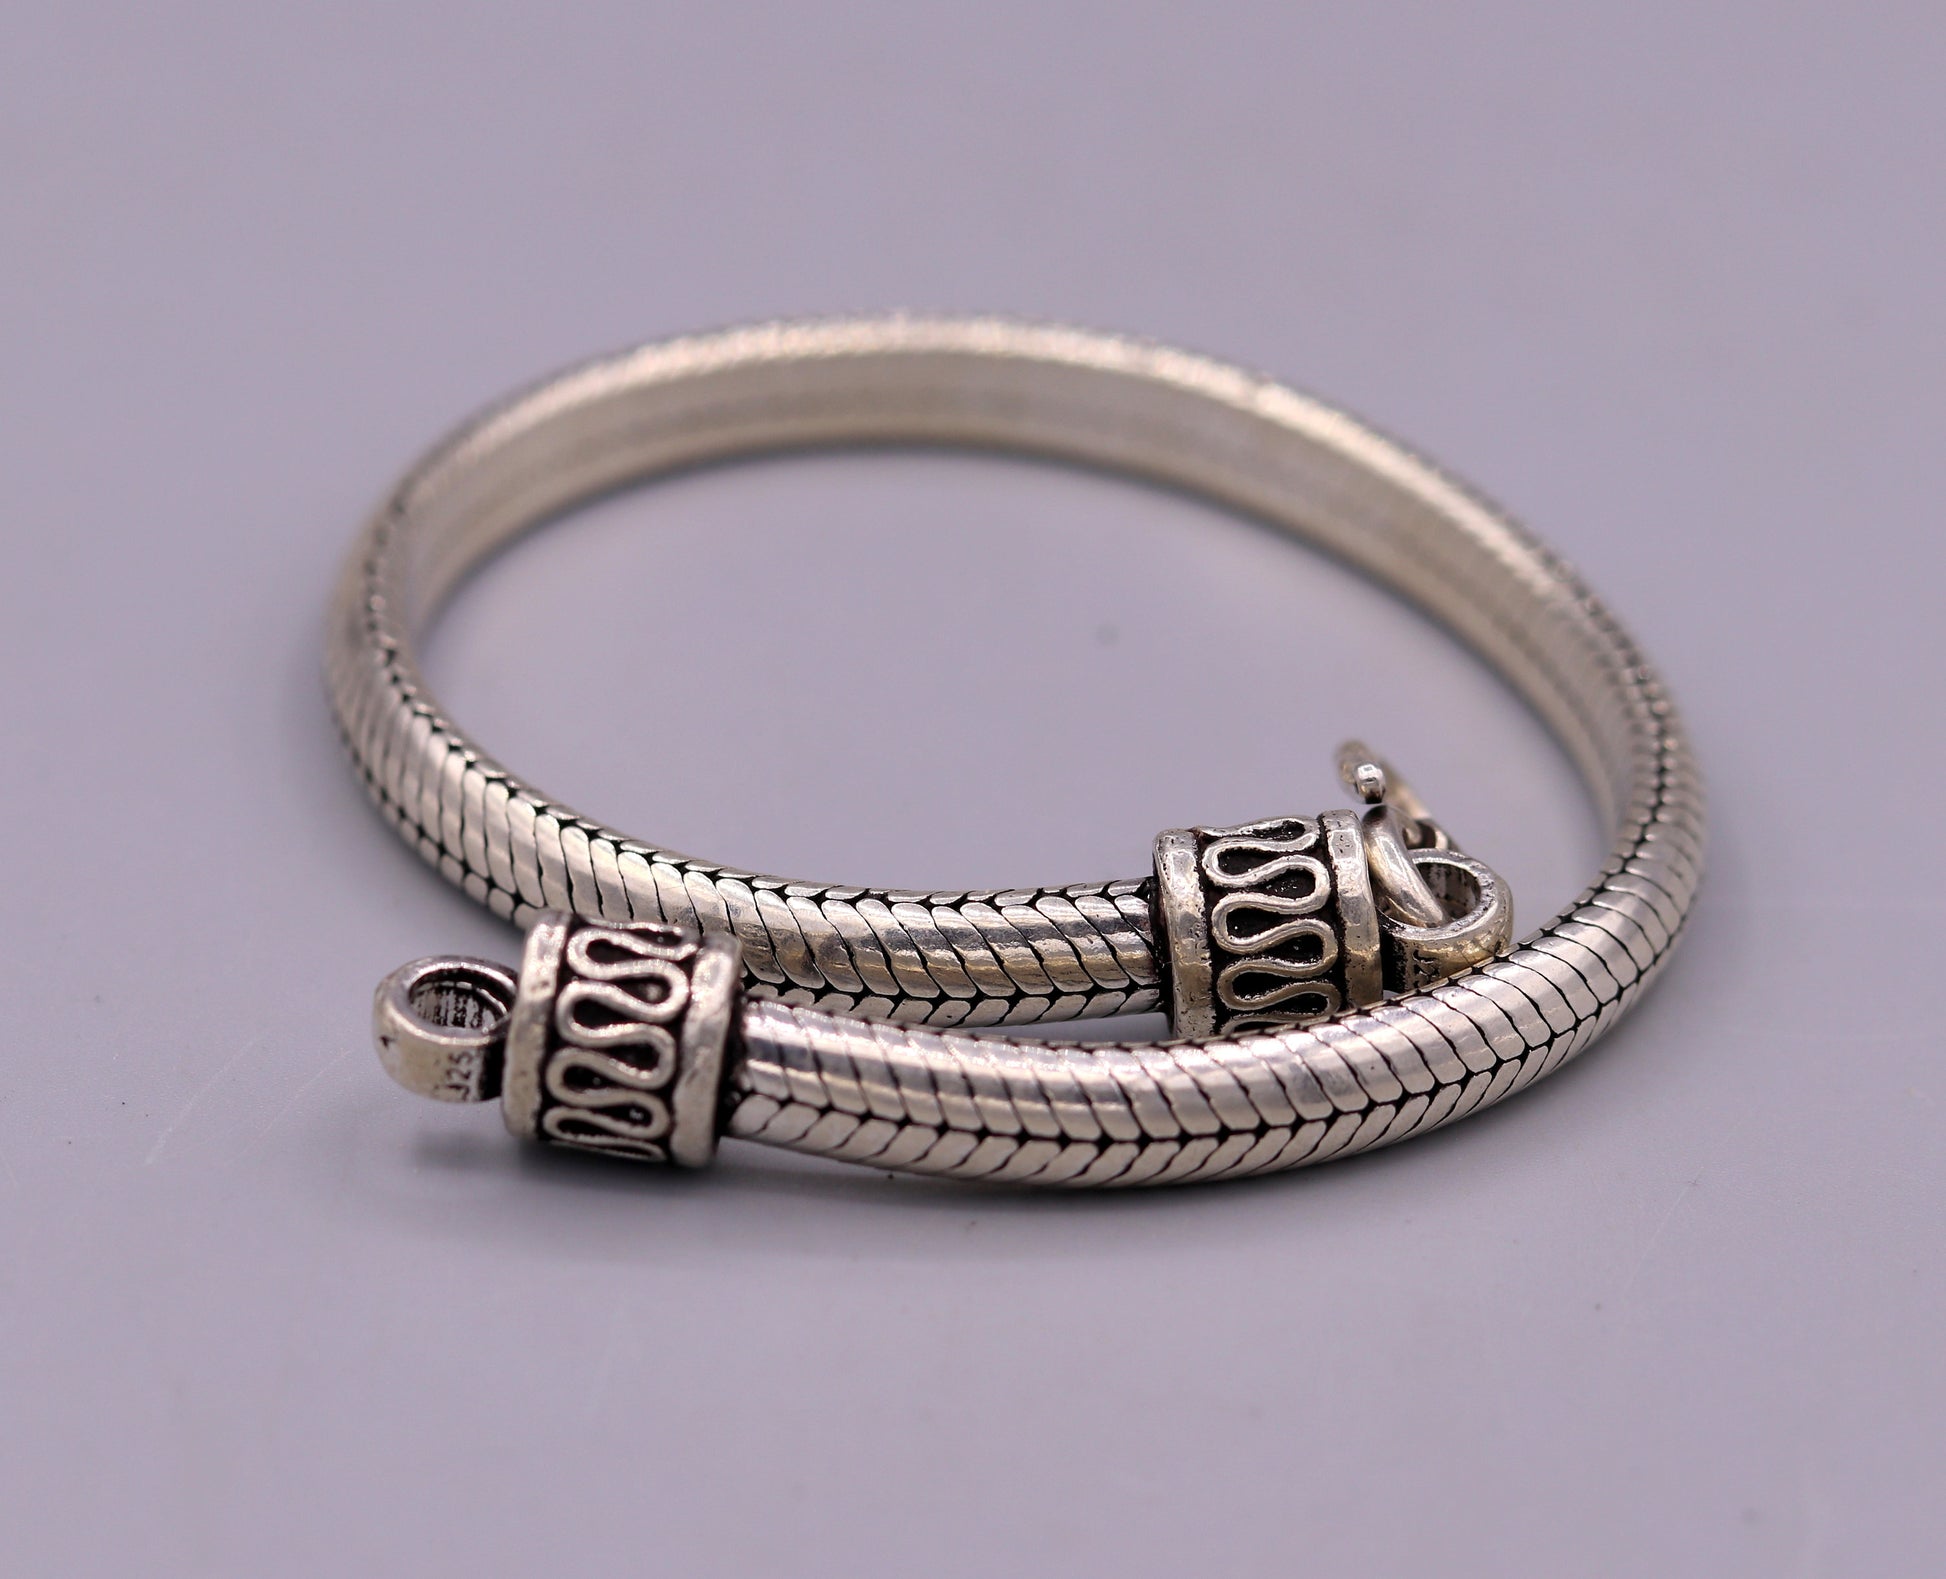 8.5" inches long 925 sterling silver handmade snake chain bracelet, D shape chain bracelet, half round snake chain bracelet unisex sbr149 - TRIBAL ORNAMENTS